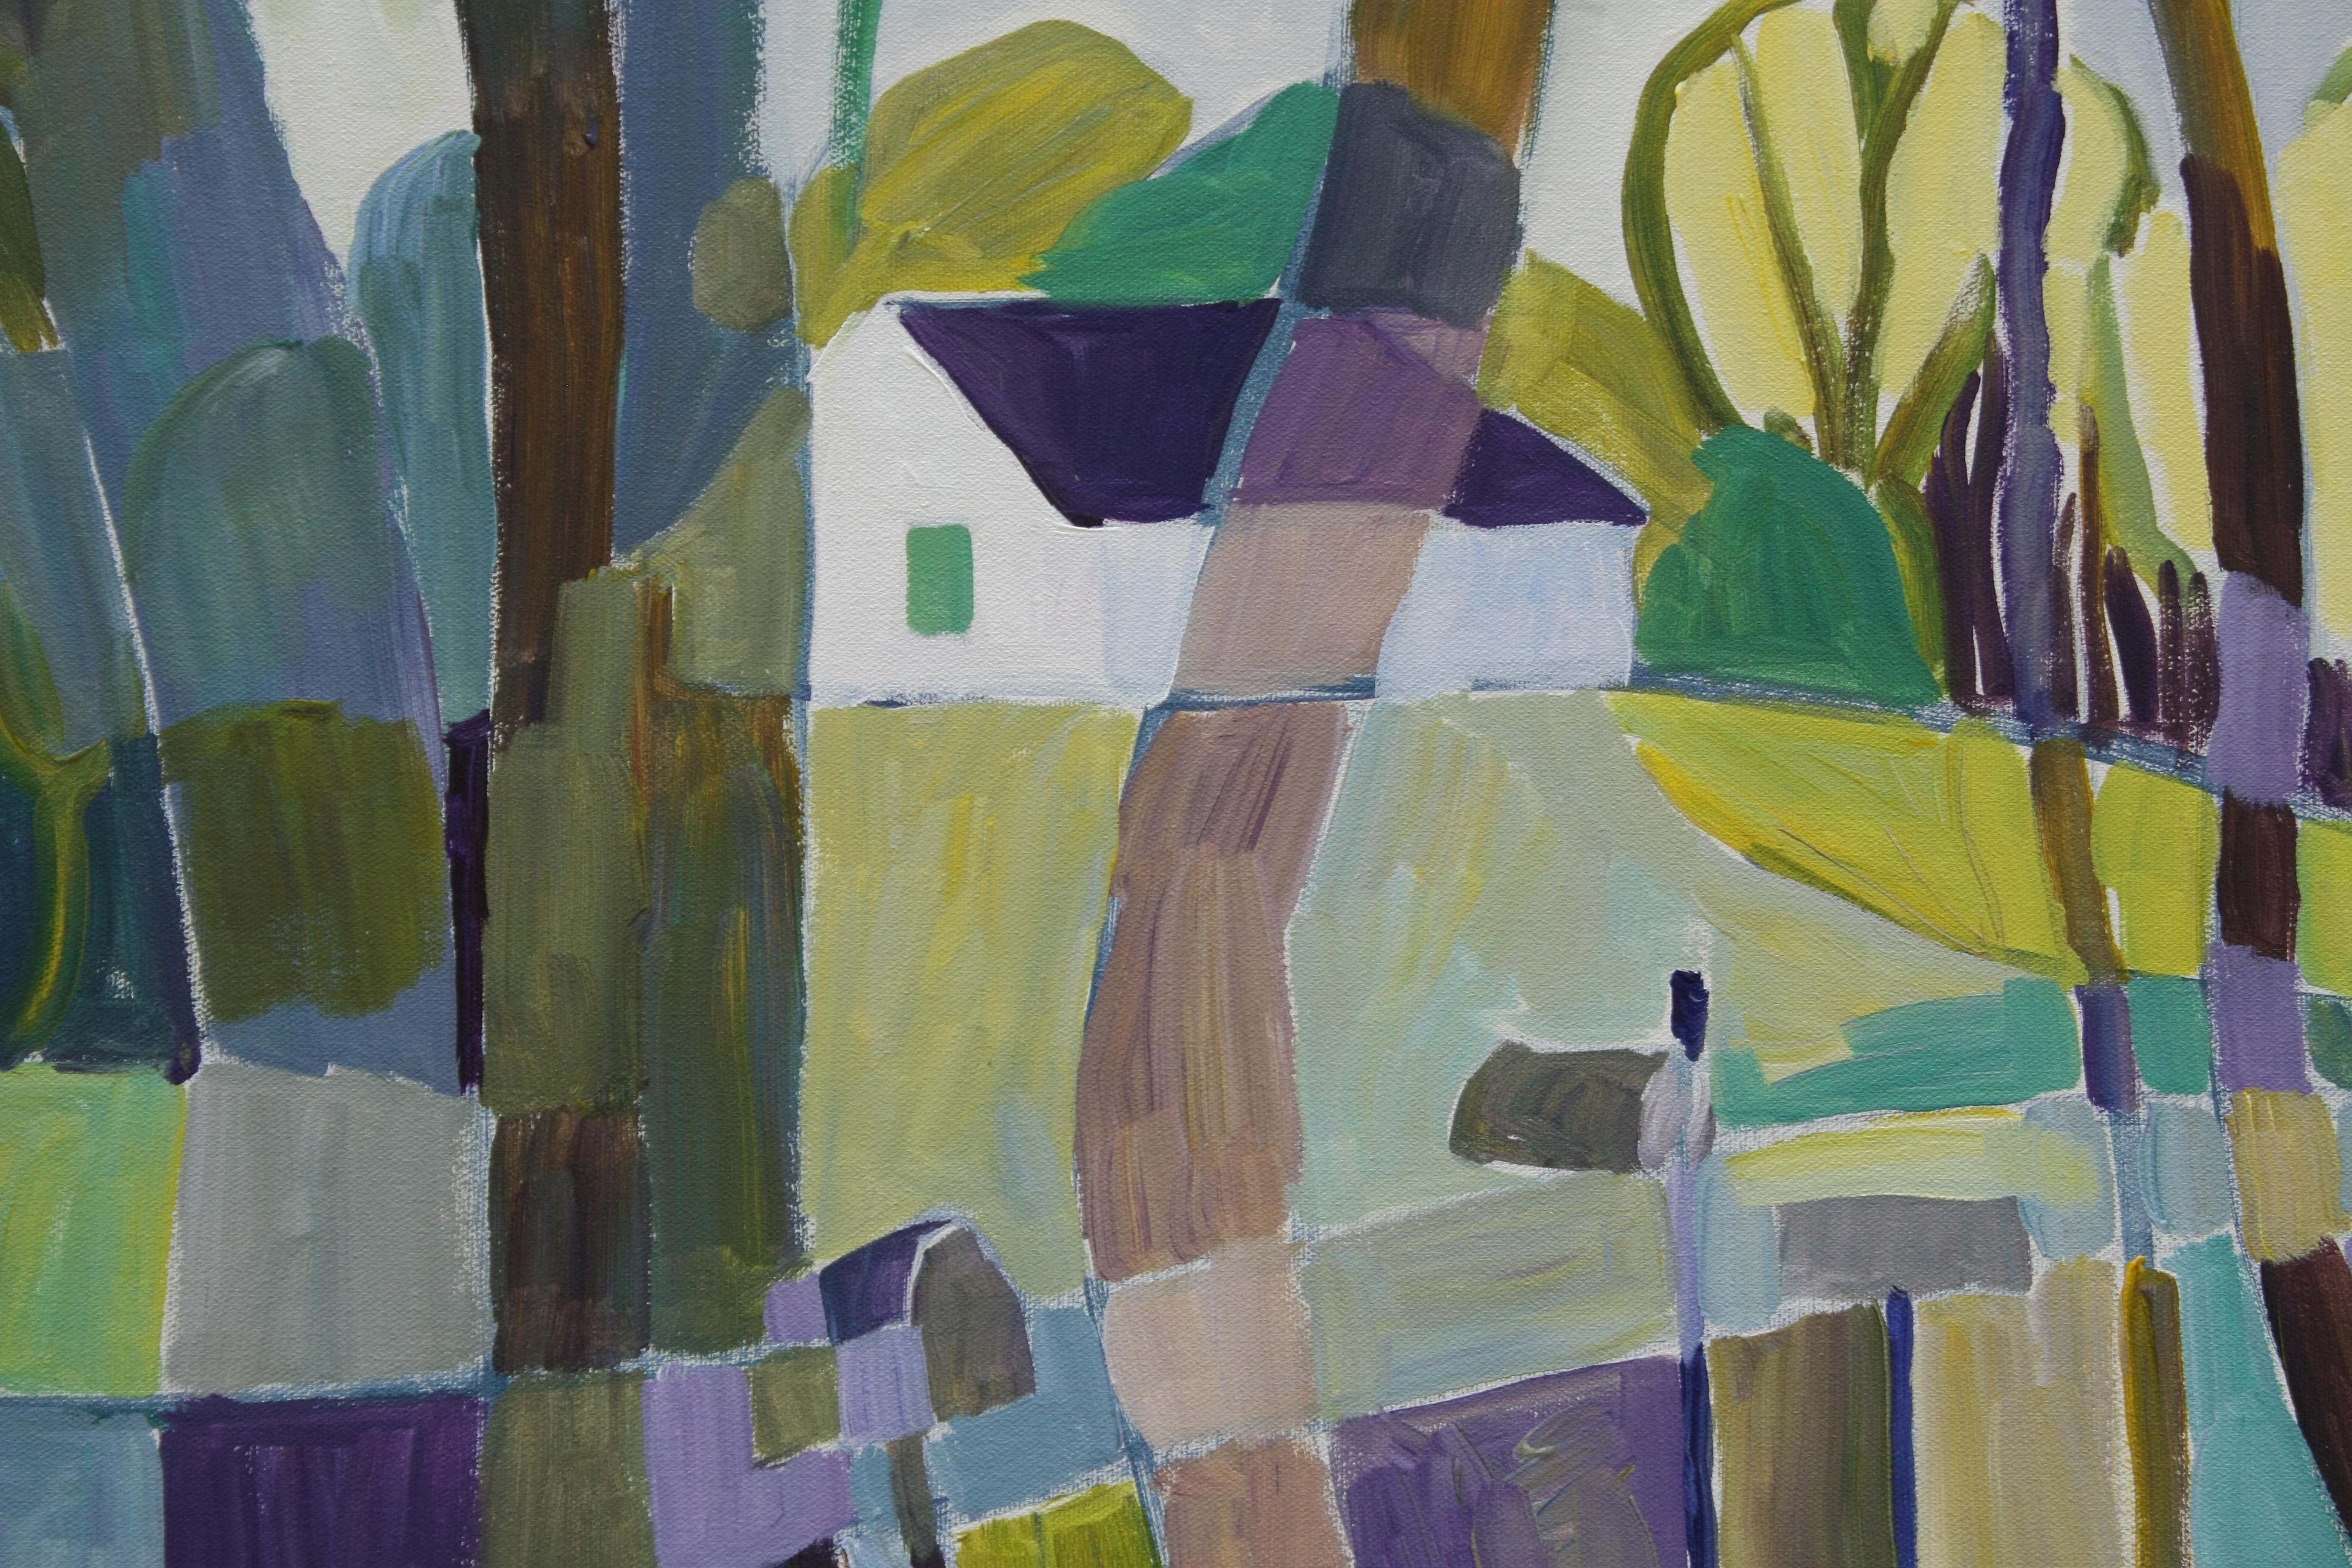 <p>Kommentare des Künstlers<br>Der Künstler Robert Hofherr zeigt eine expressionistische Ansicht eines Hauses, das von üppigem Grün umgeben ist. 